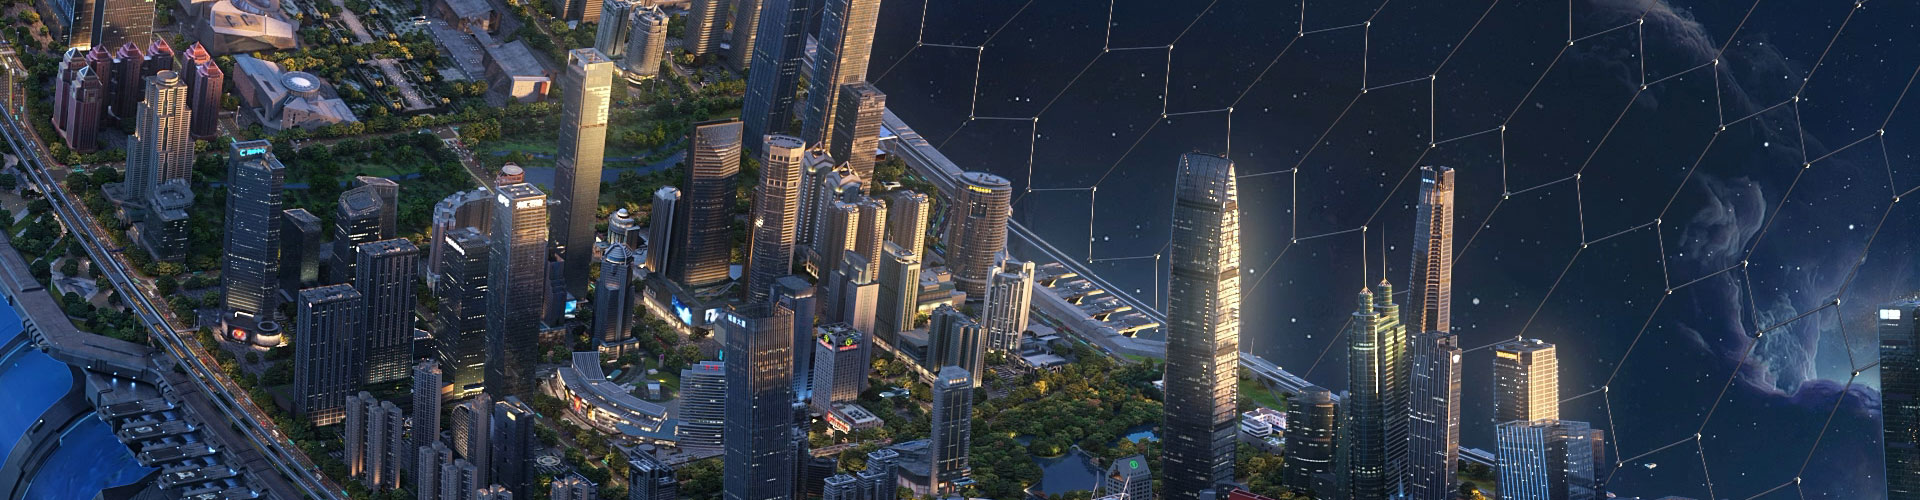 深圳设计周发布城市视觉大片《敢闯敢试》